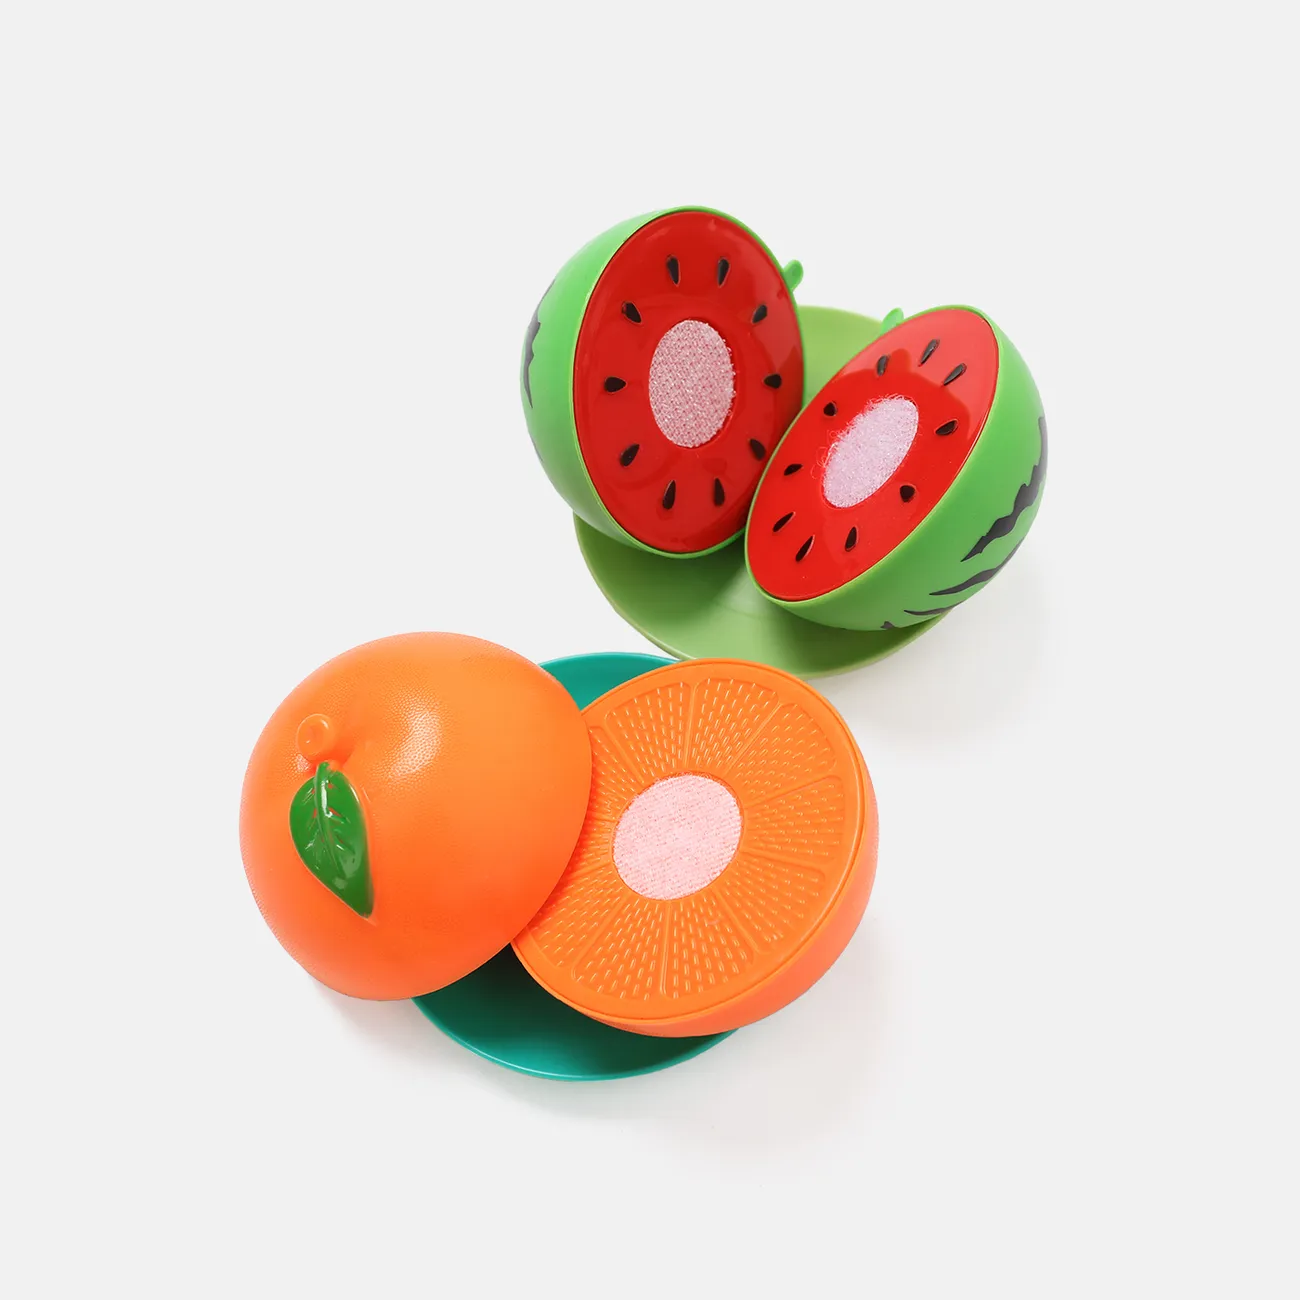 16Pcs BPA libre de plástico de corte de plástico jugar comida juguete niños cortable frutas verduras Set con cuchillos y tabla de cortar y platos (cuchillo color aleatorio) Color-A big image 1